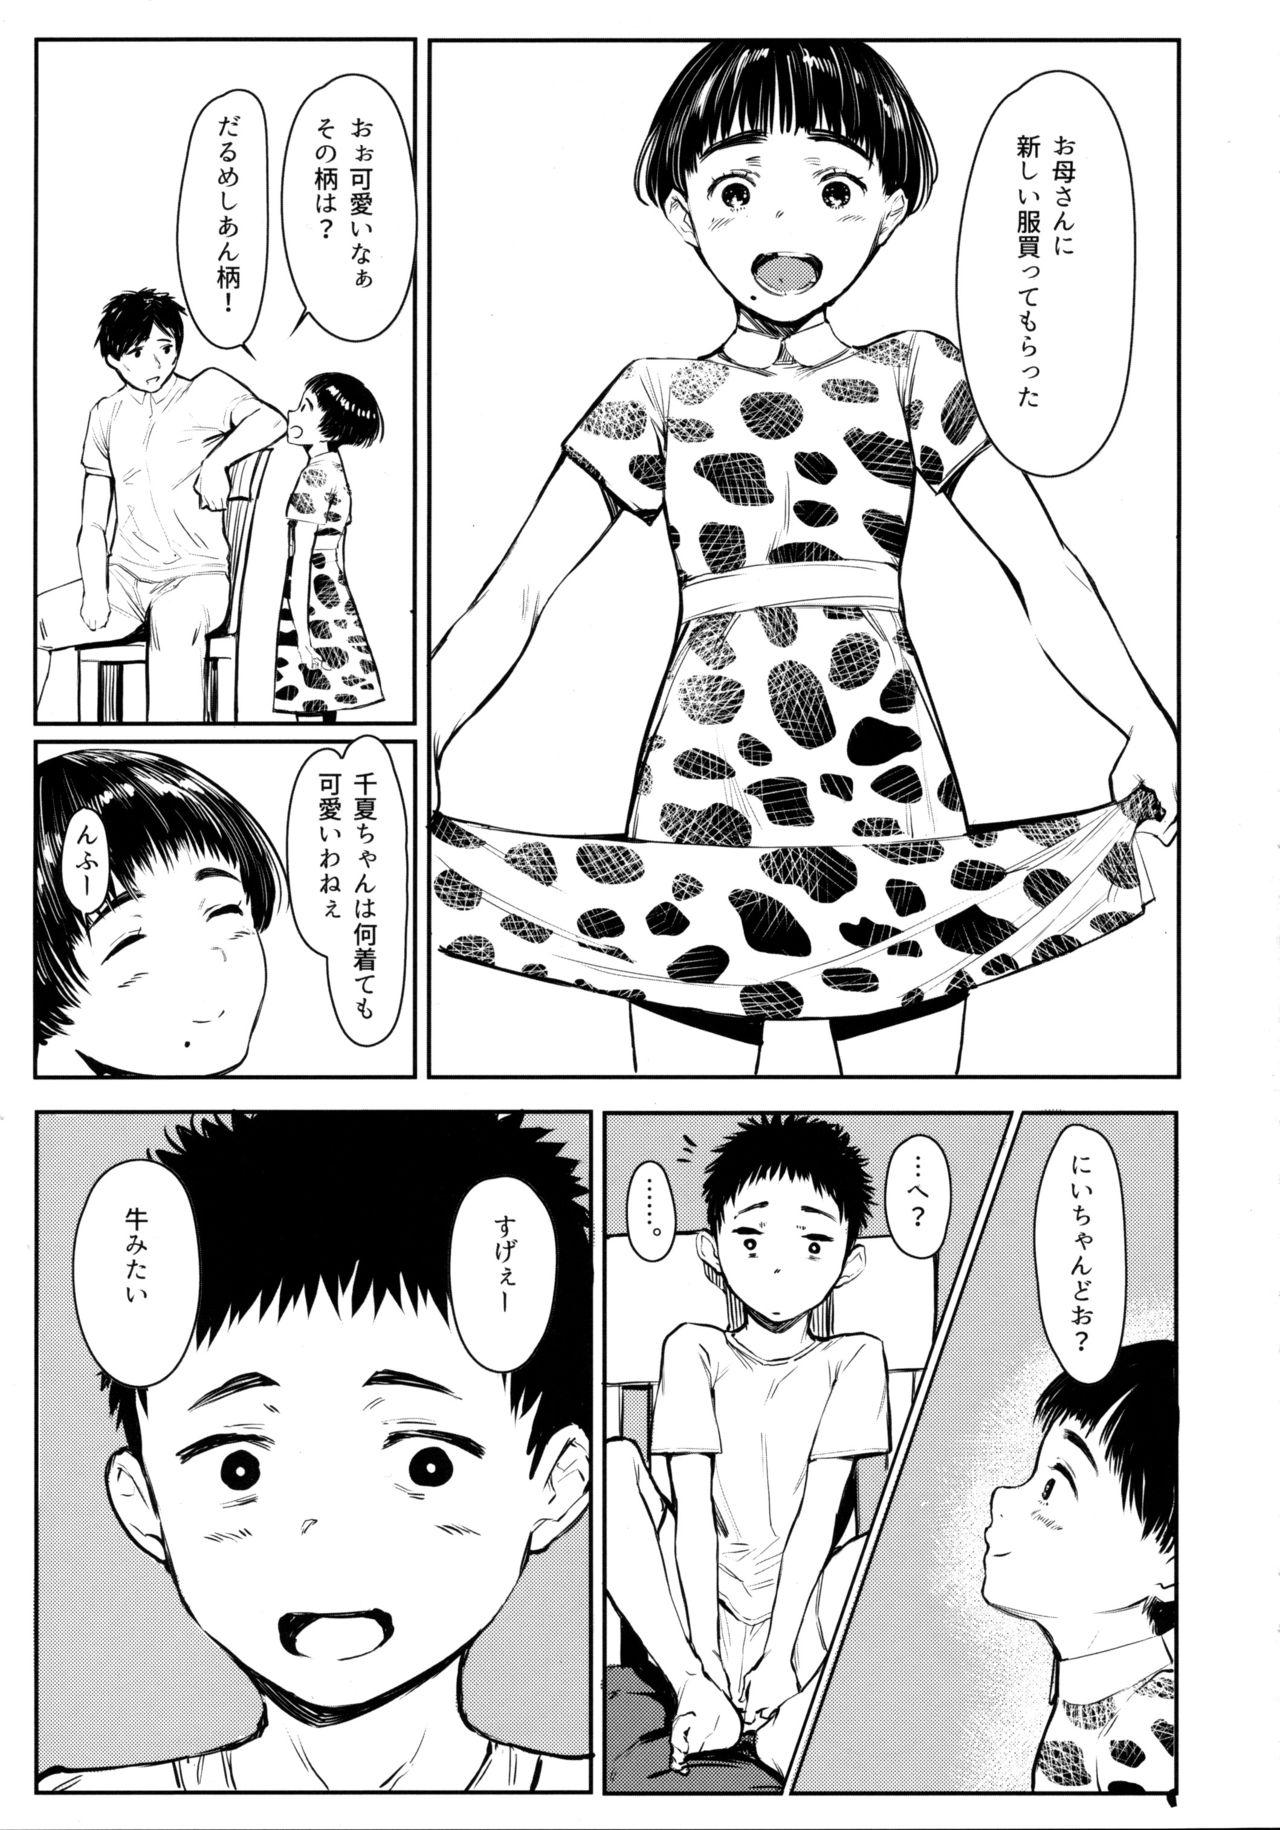 Amateurs Tonari no Chinatsu-chan R 05 - Original Bisex - Page 6